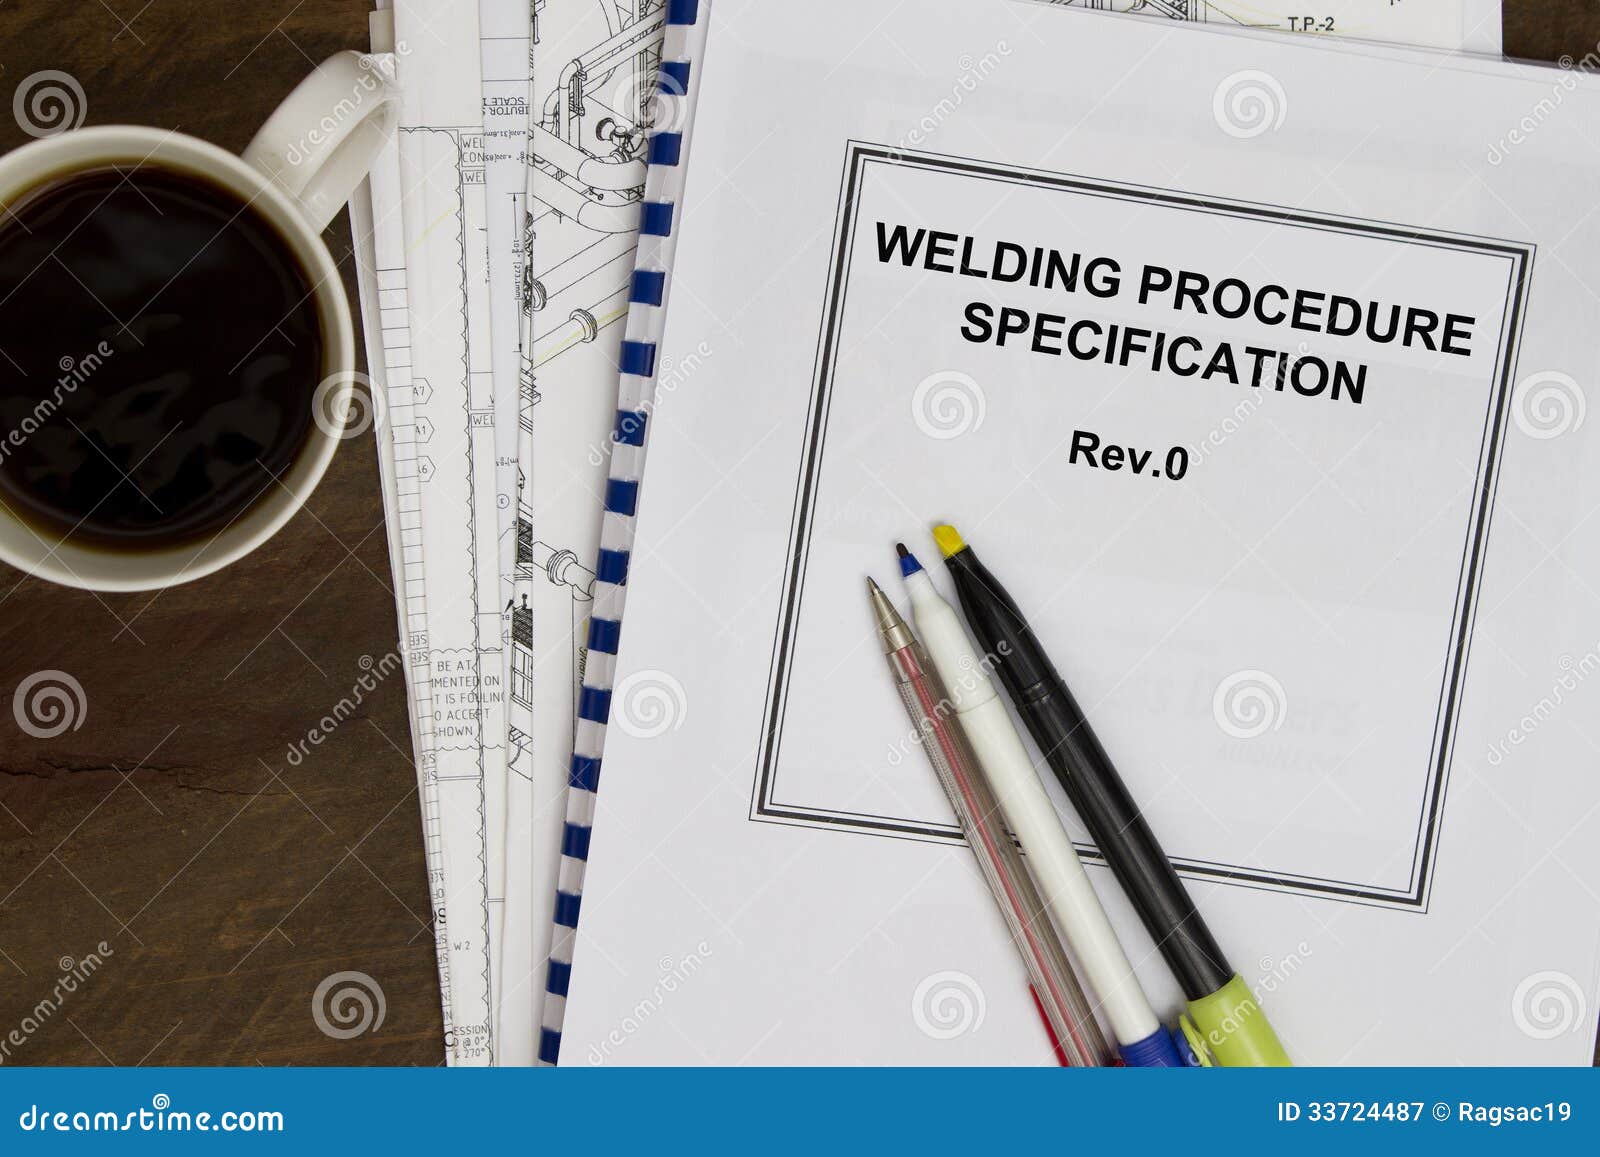 welding procedure specification